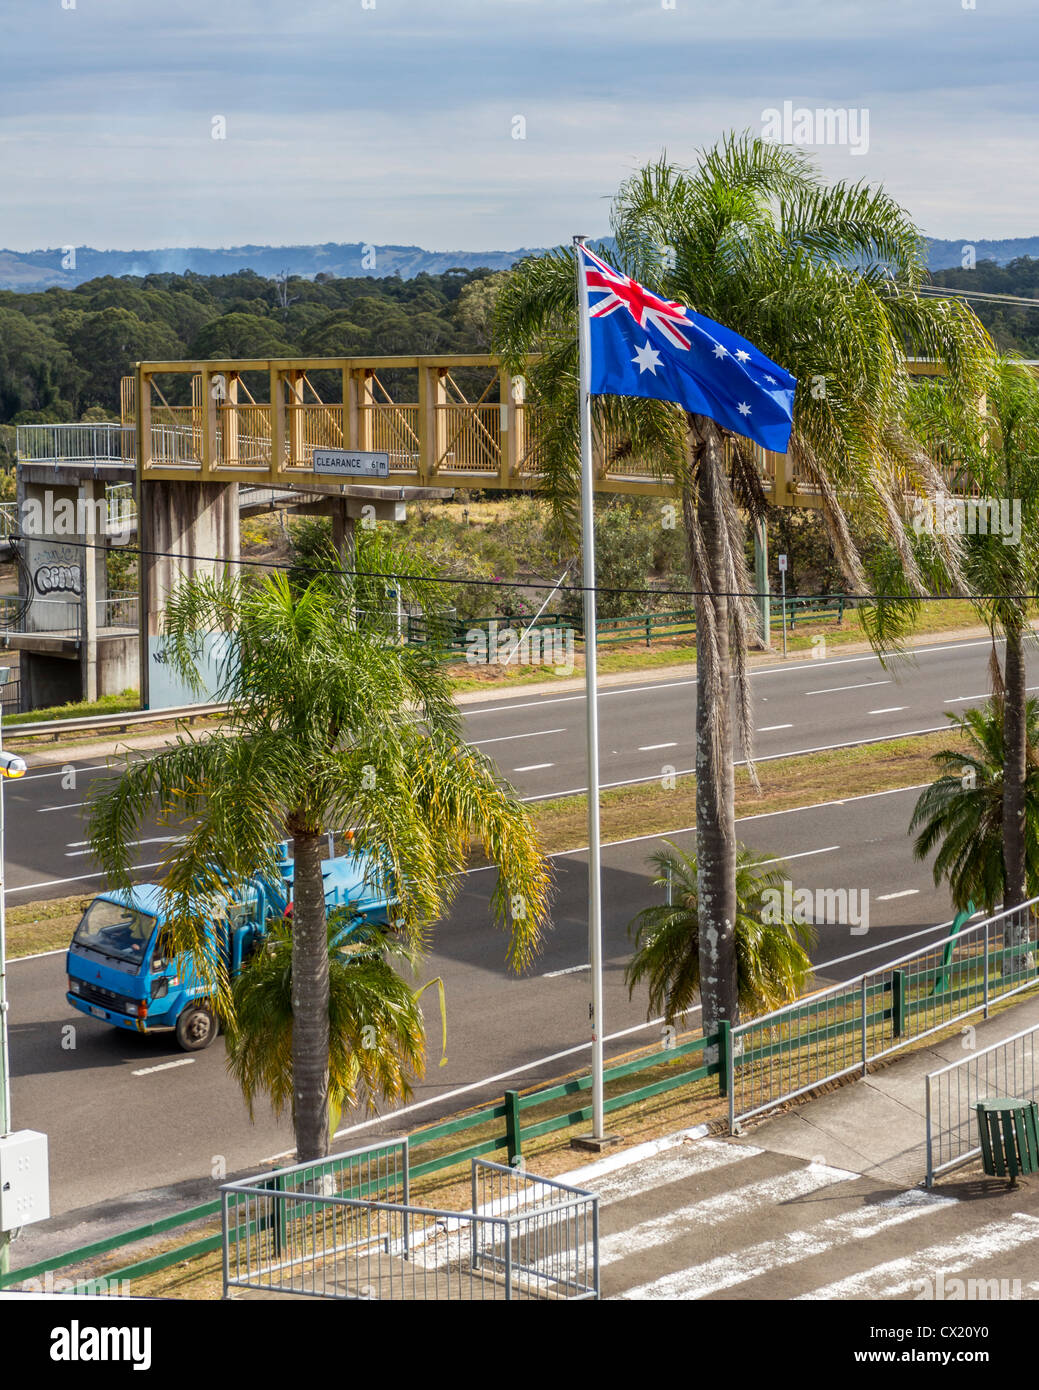 Autostrada voce alla grande ananas, una attrazione turistica sulla Costa del Sole nel Queensland, Australia Foto Stock